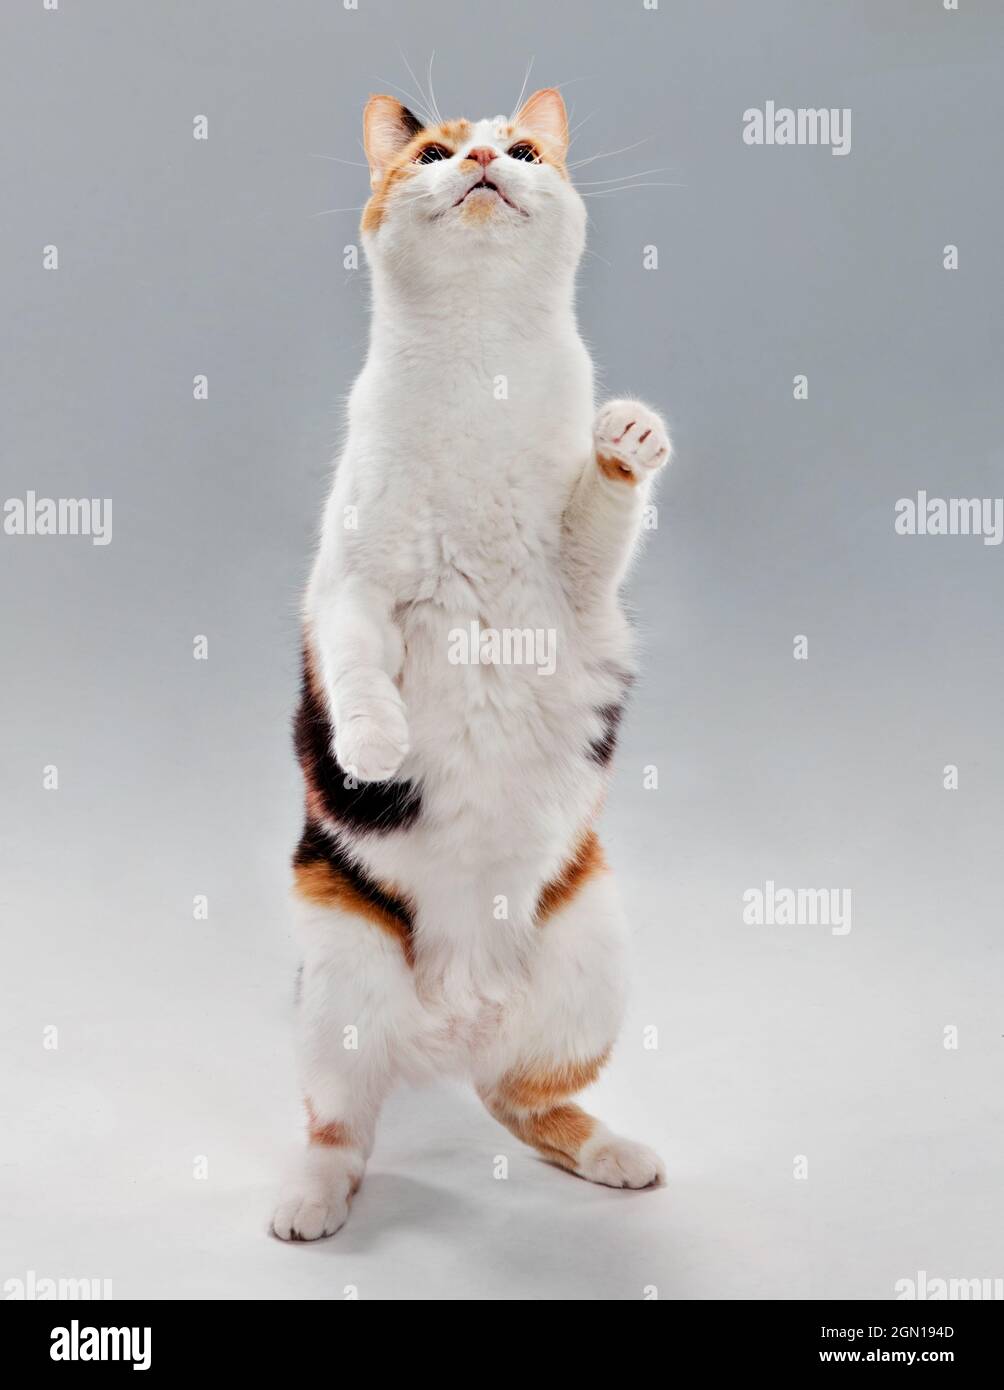 Studio ritratto di un gatto calico in piedi su due gambe sorridenti e guardando verso l'alto. Foto Stock